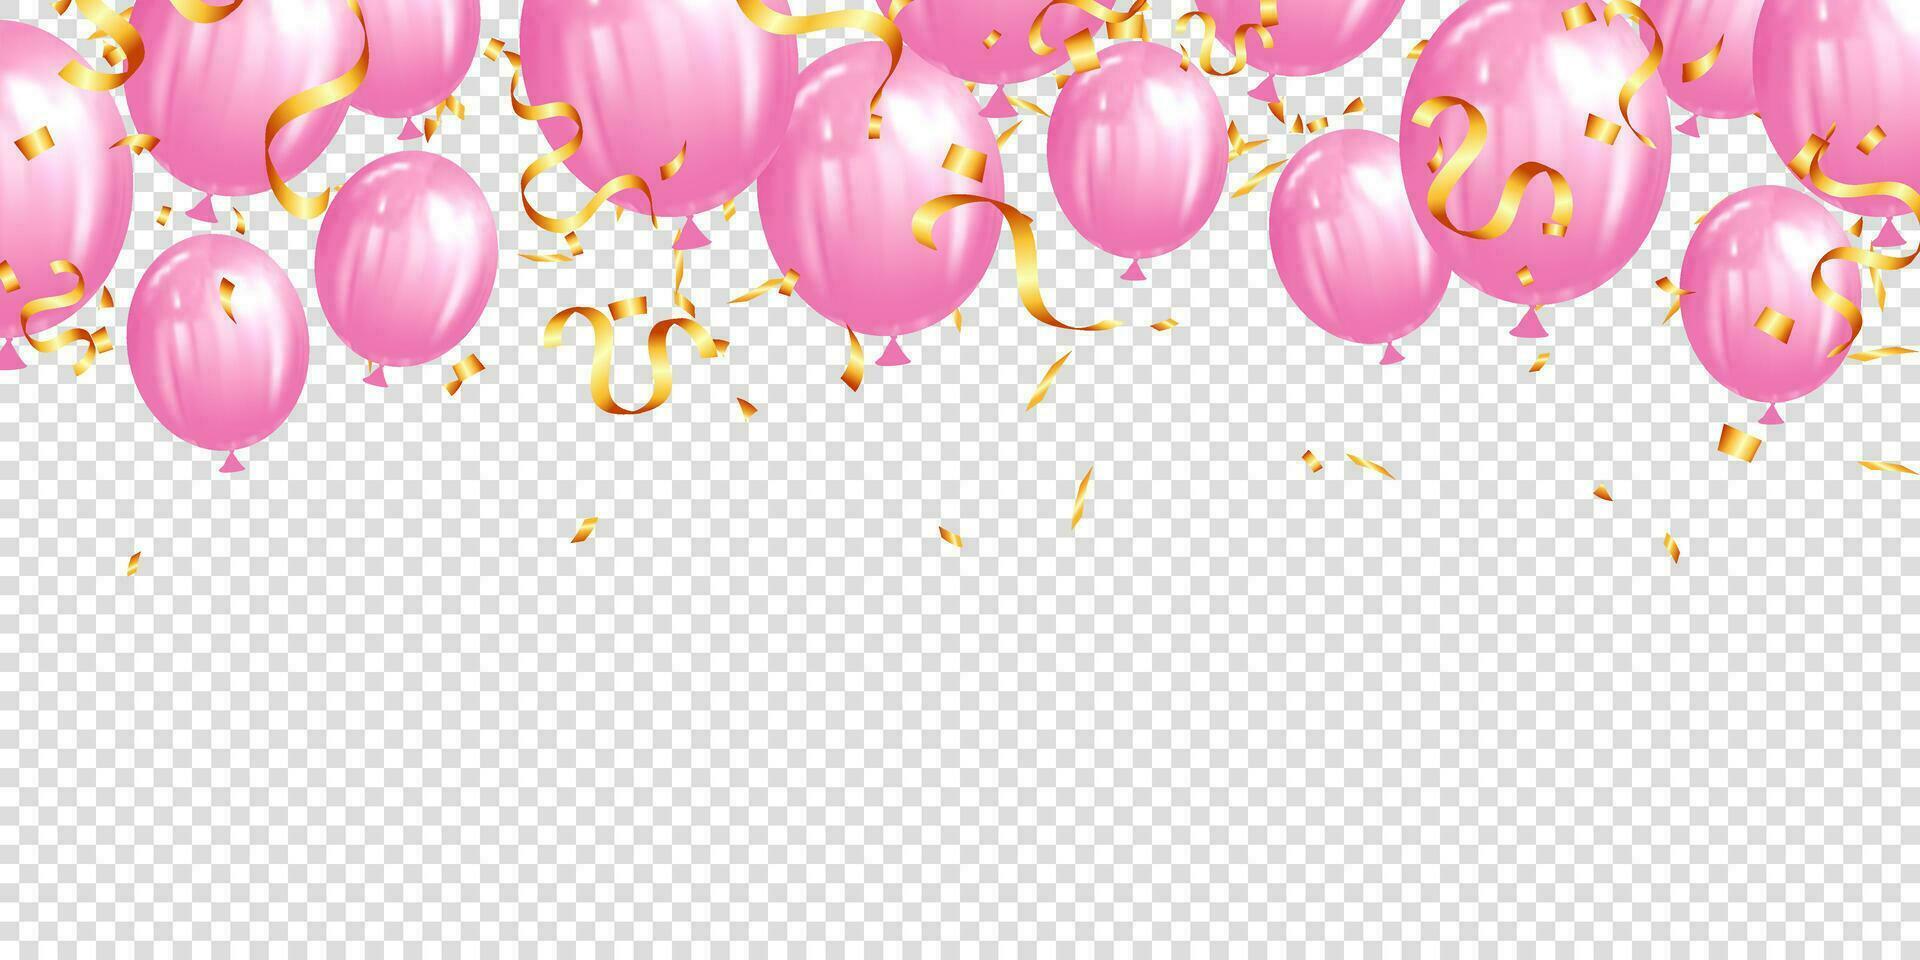 vektor realistisk rosa ballong och guld konfetti gräns bakgrund. festlig helium ballonger för årsdag, födelsedag fest design